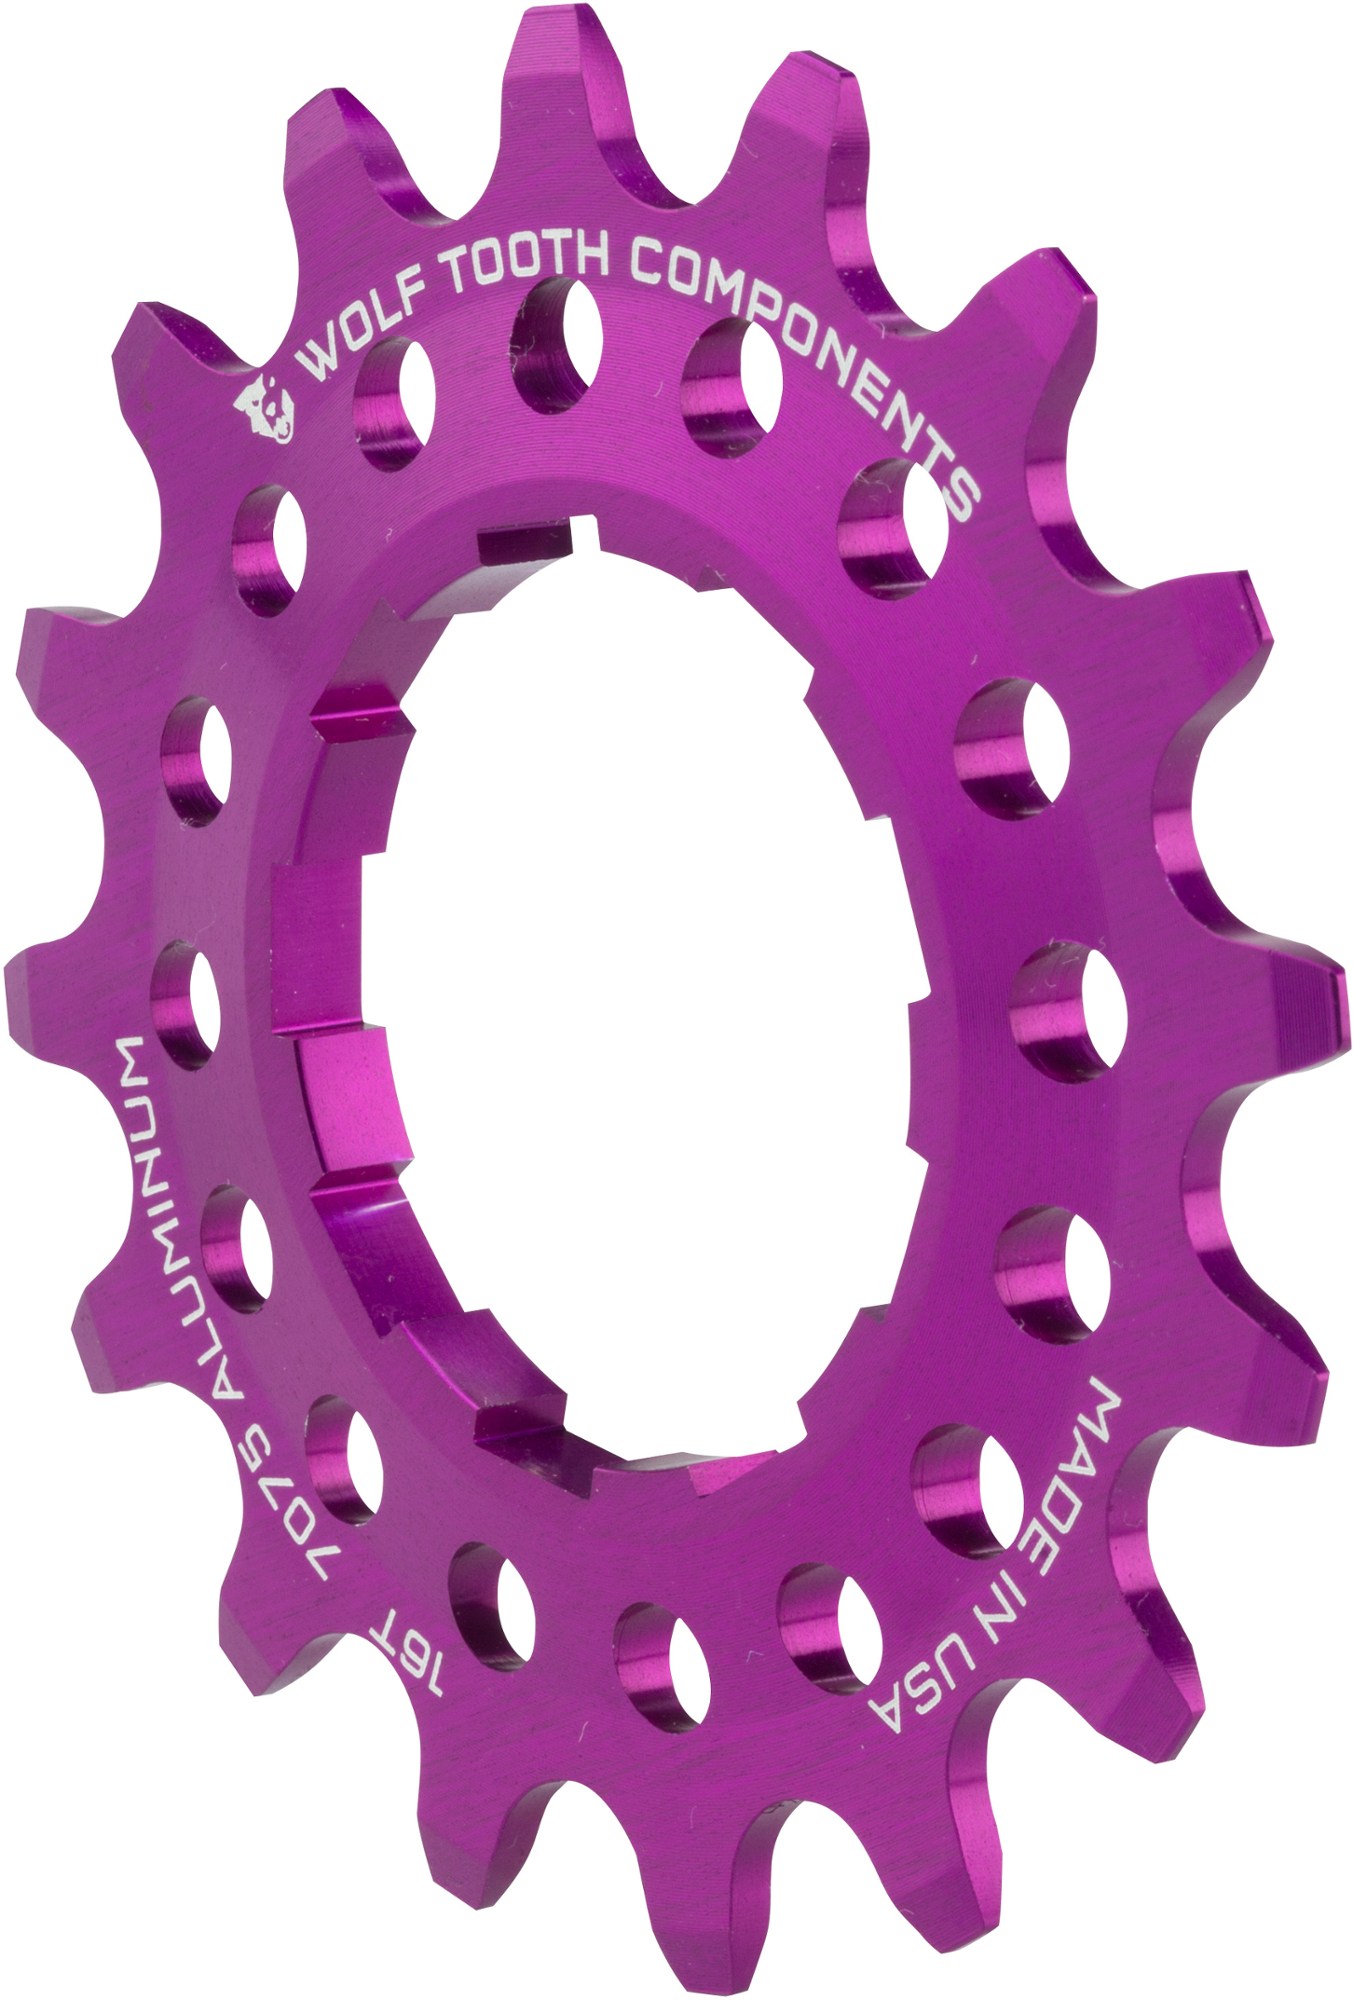 Односкоростной алюминиевый винтик Wolf Tooth Components, фиолетовый шестерня для мясорубки moulinex зубья 50 11